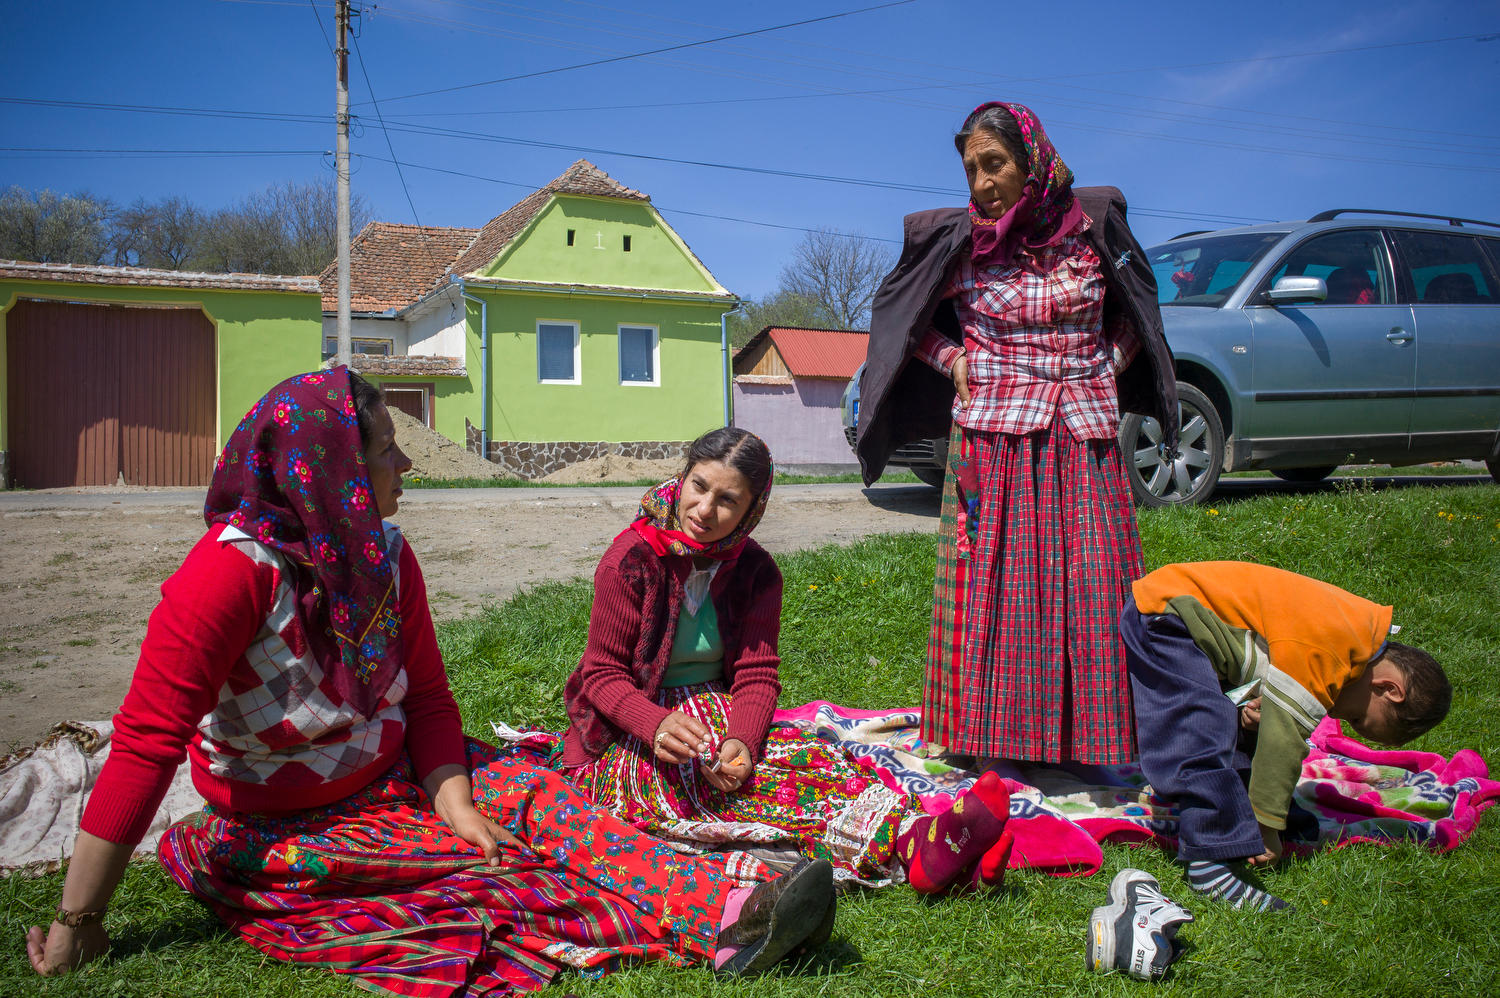 Tre donne in abiti colorati